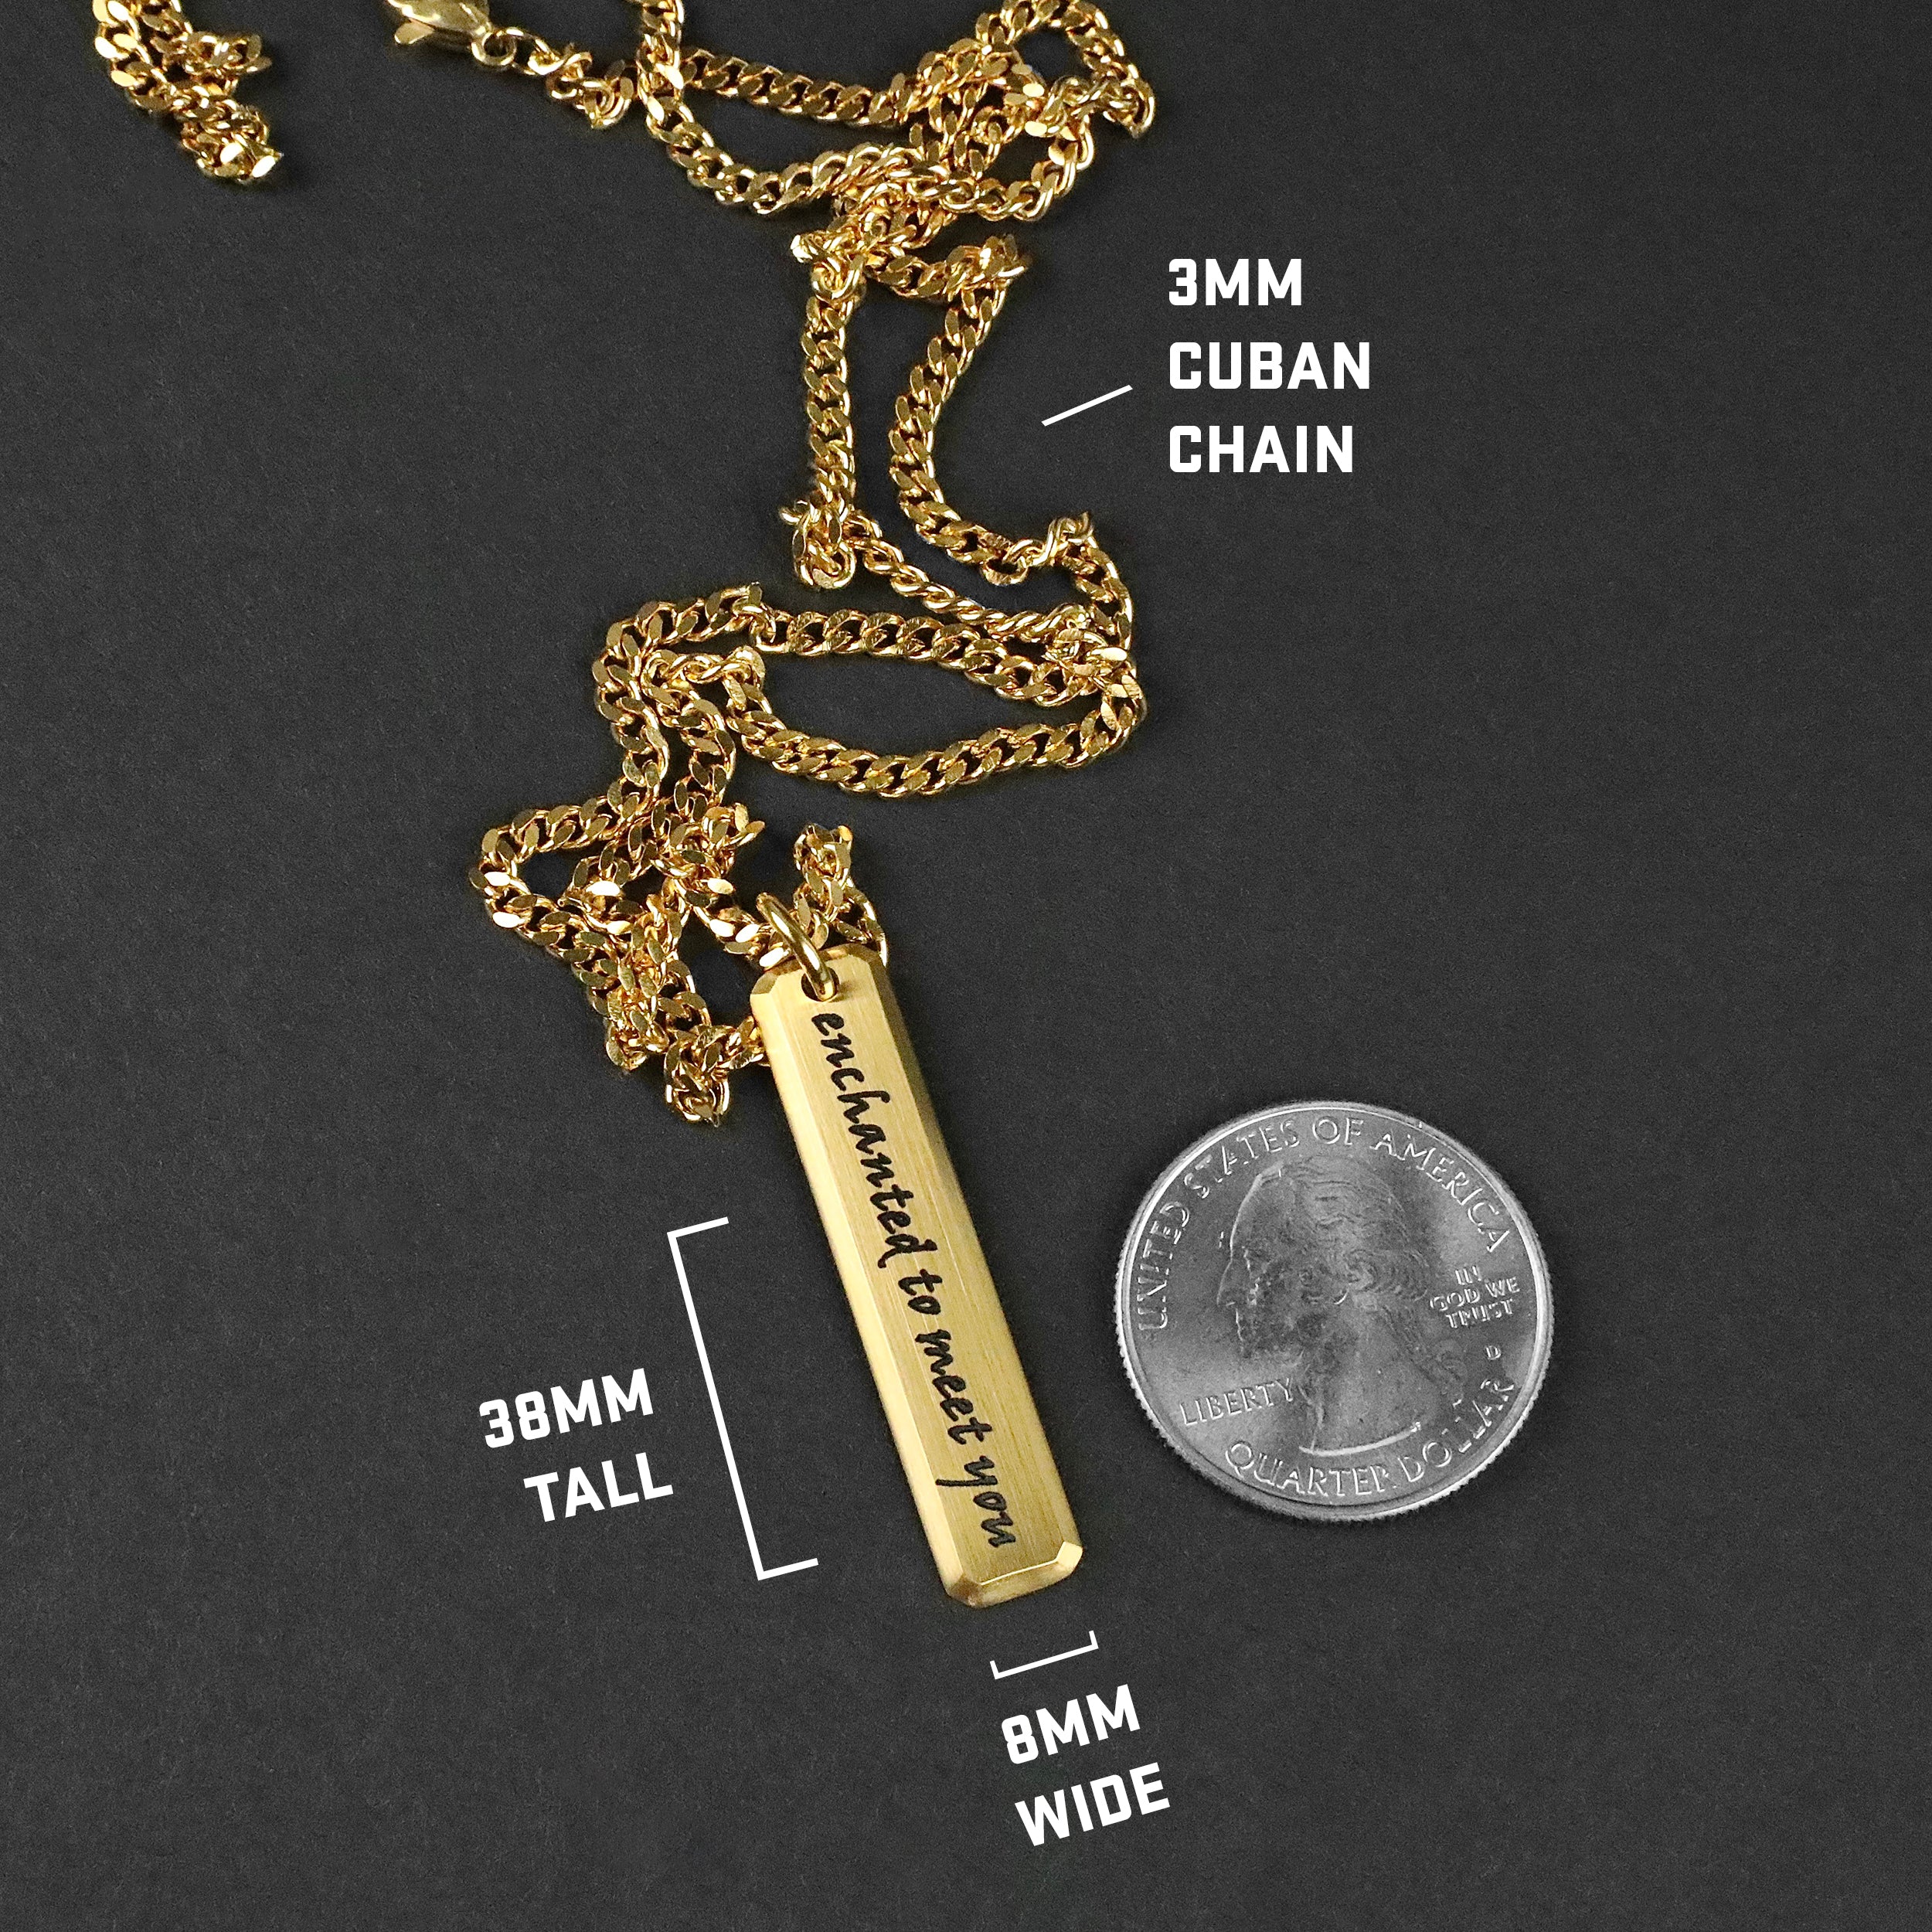 Beveled Bar Necklace - Gold